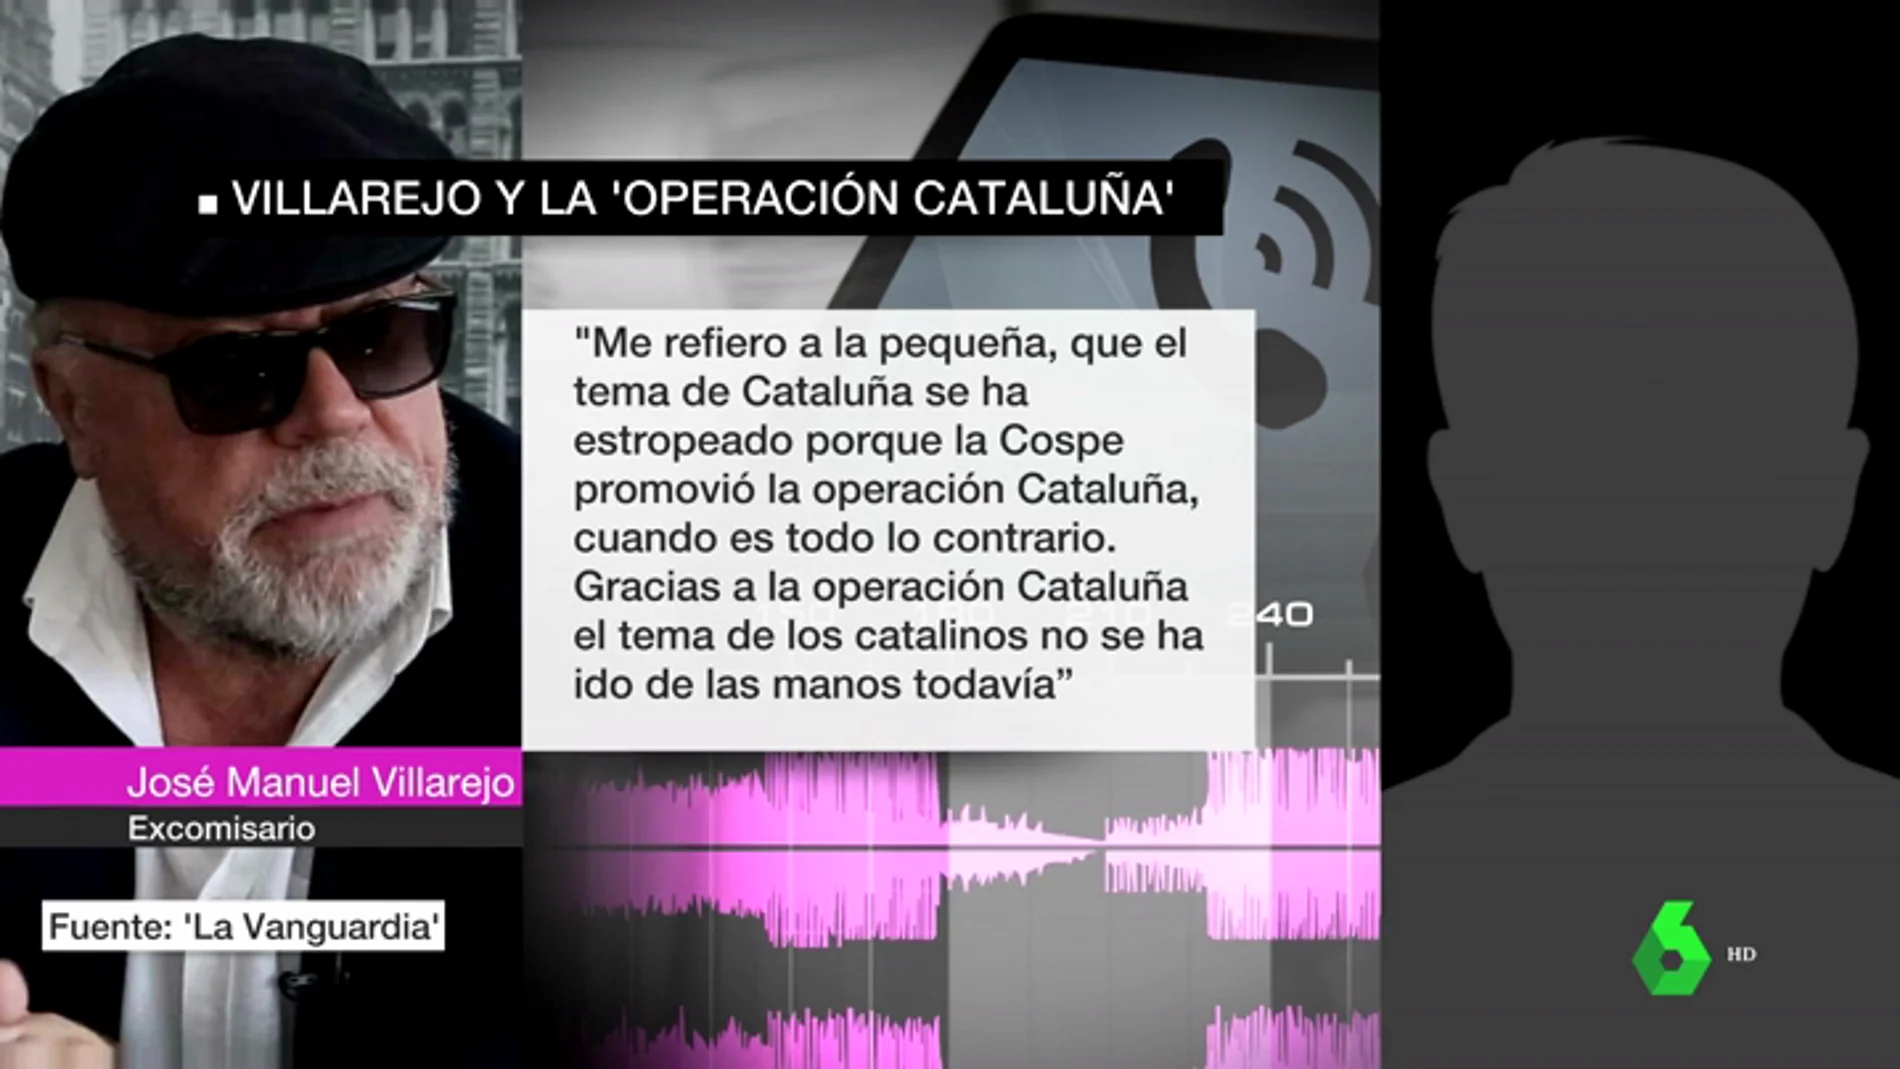 Las grabaciones de Villarejo que confirman la 'operación Cataluña' y la lucha interna entre Sáenz de Santamaría y Cospedal